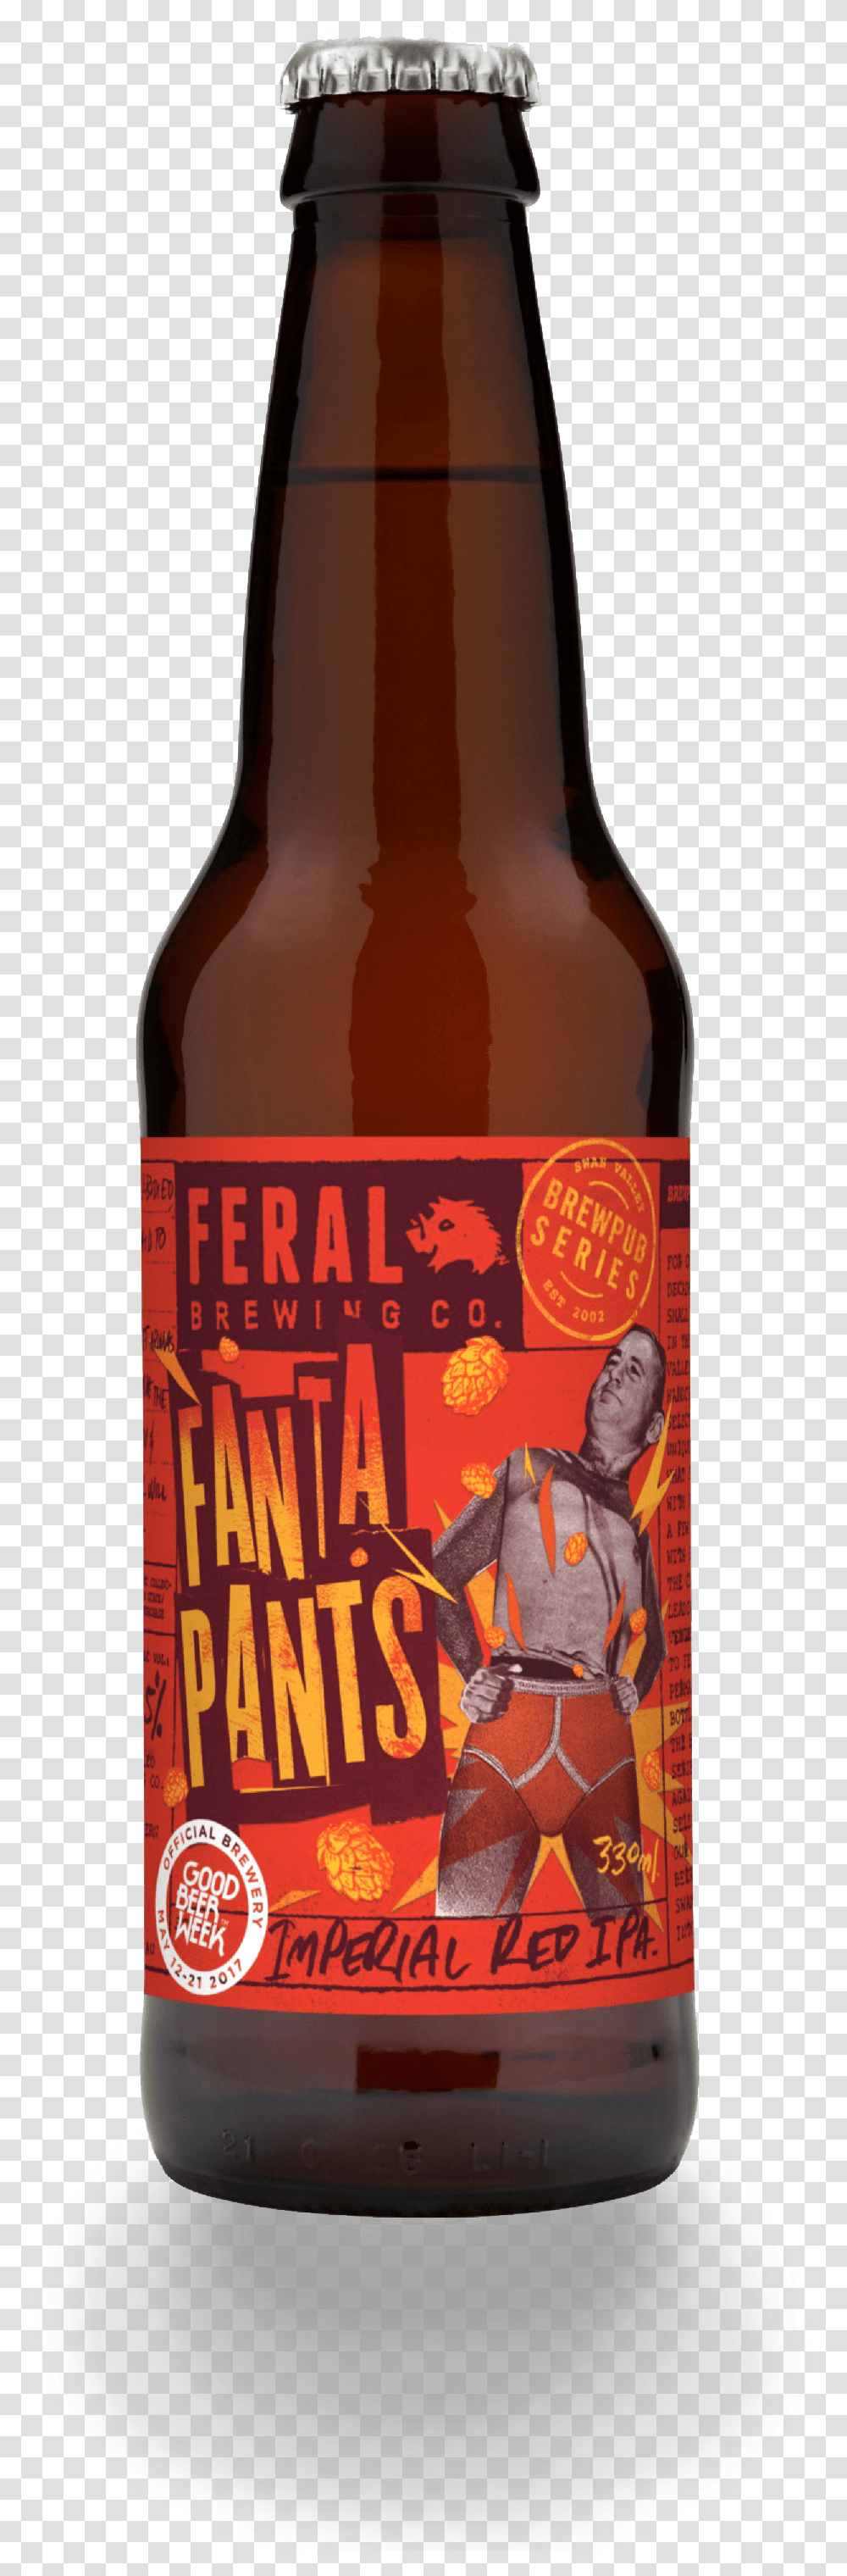 Feral Fanta Pants Artwork Bottle Gbwmock Tiny Rebel Urban Ipa, Beer, Alcohol, Beverage, Drink Transparent Png